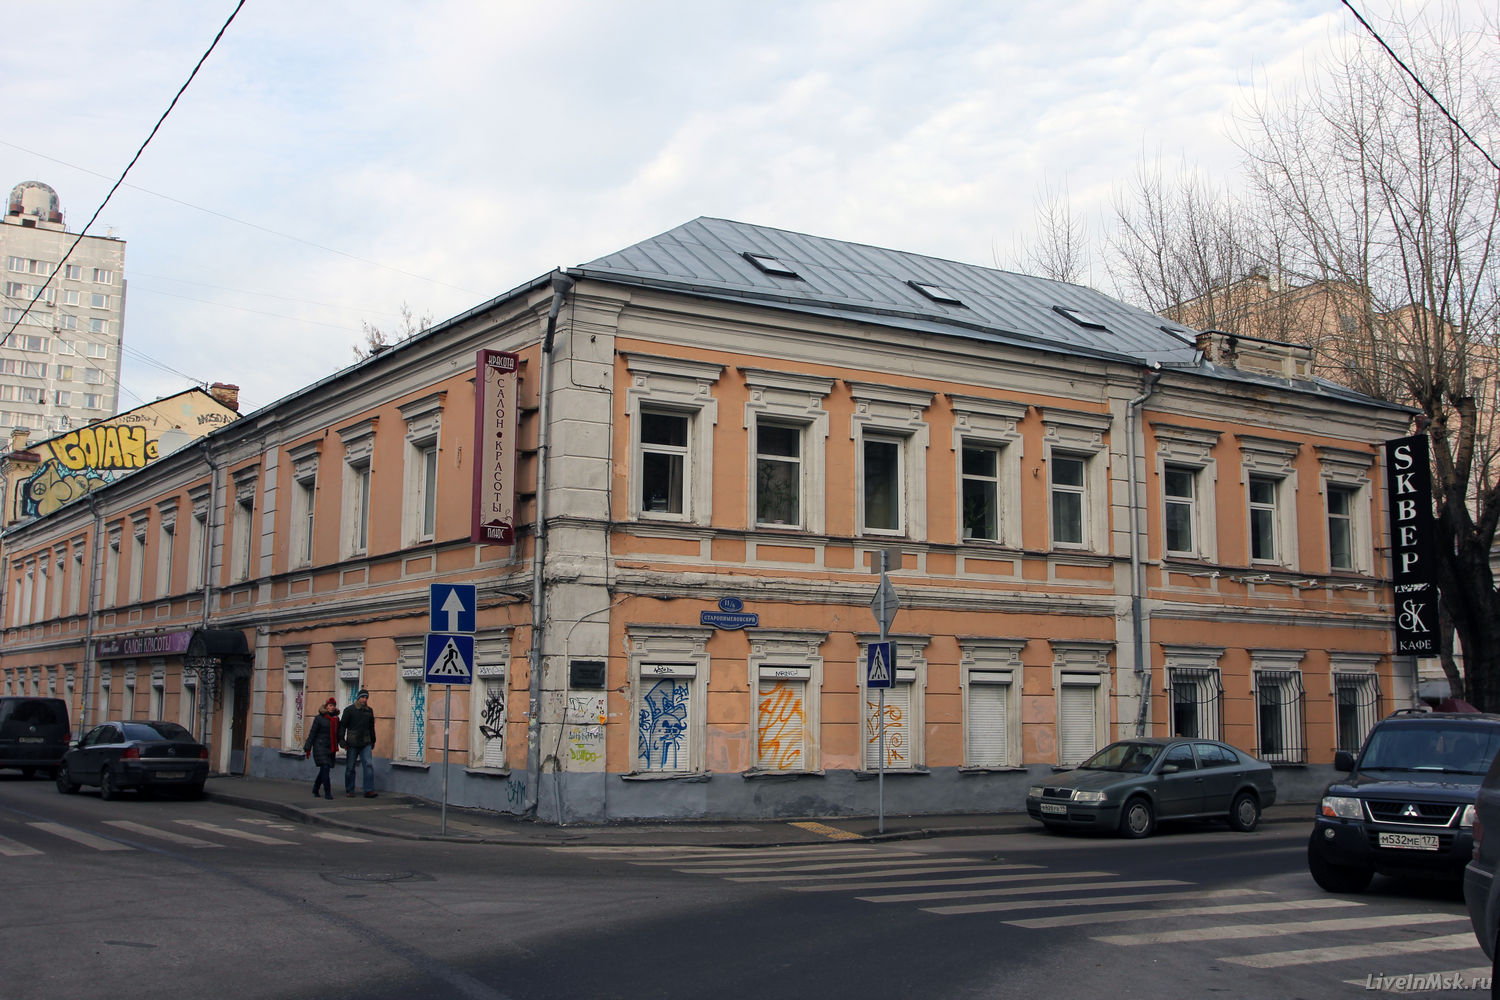 Палаты в Старопименовском переулке, фото 2014 года